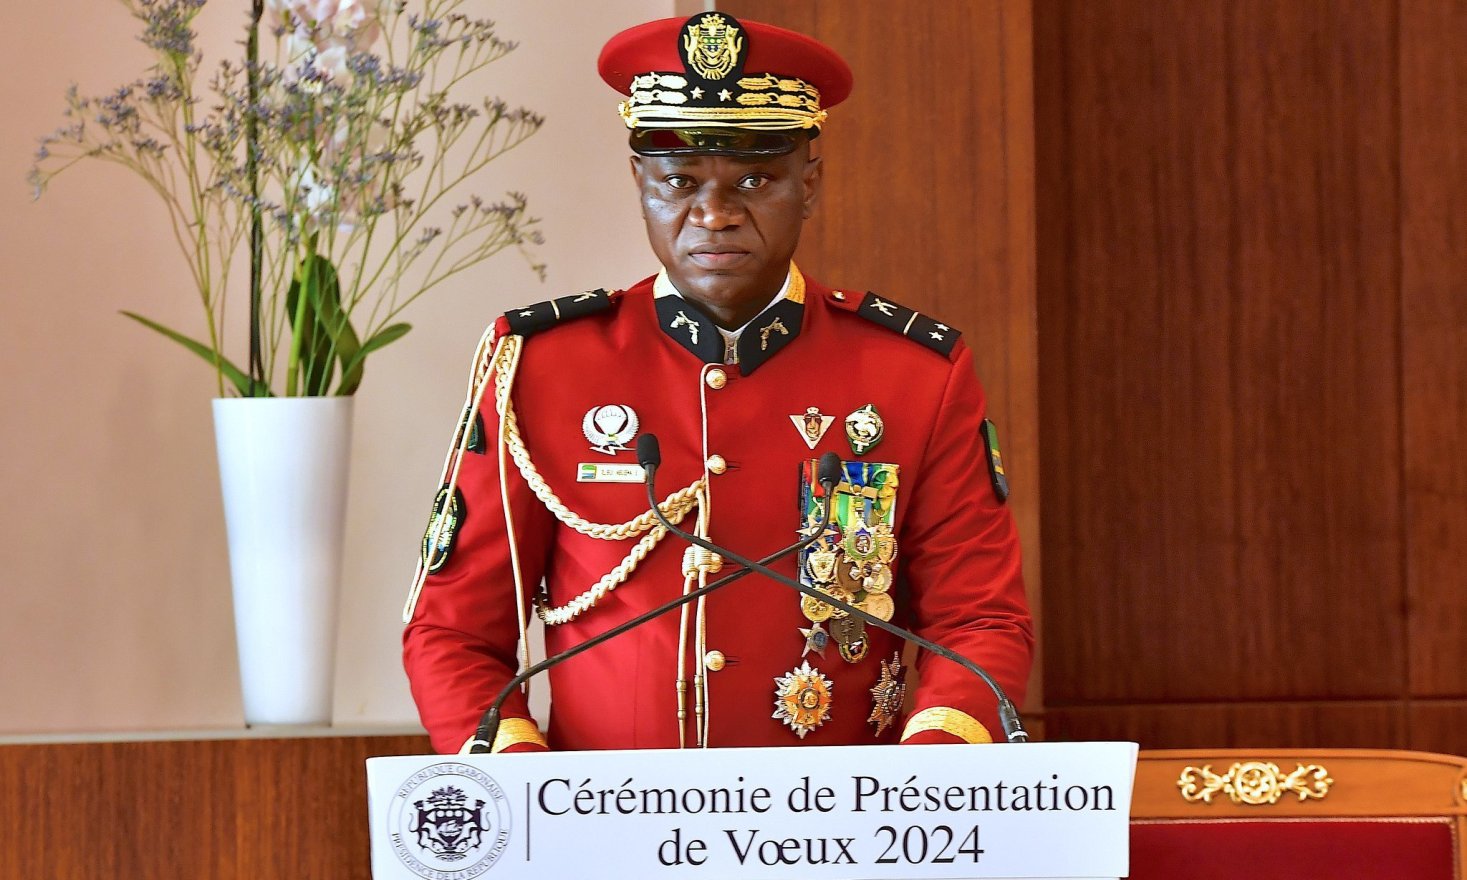 Présentation de vœux 2024 : Discours d’Oligui Nguema au corps diplomatique
